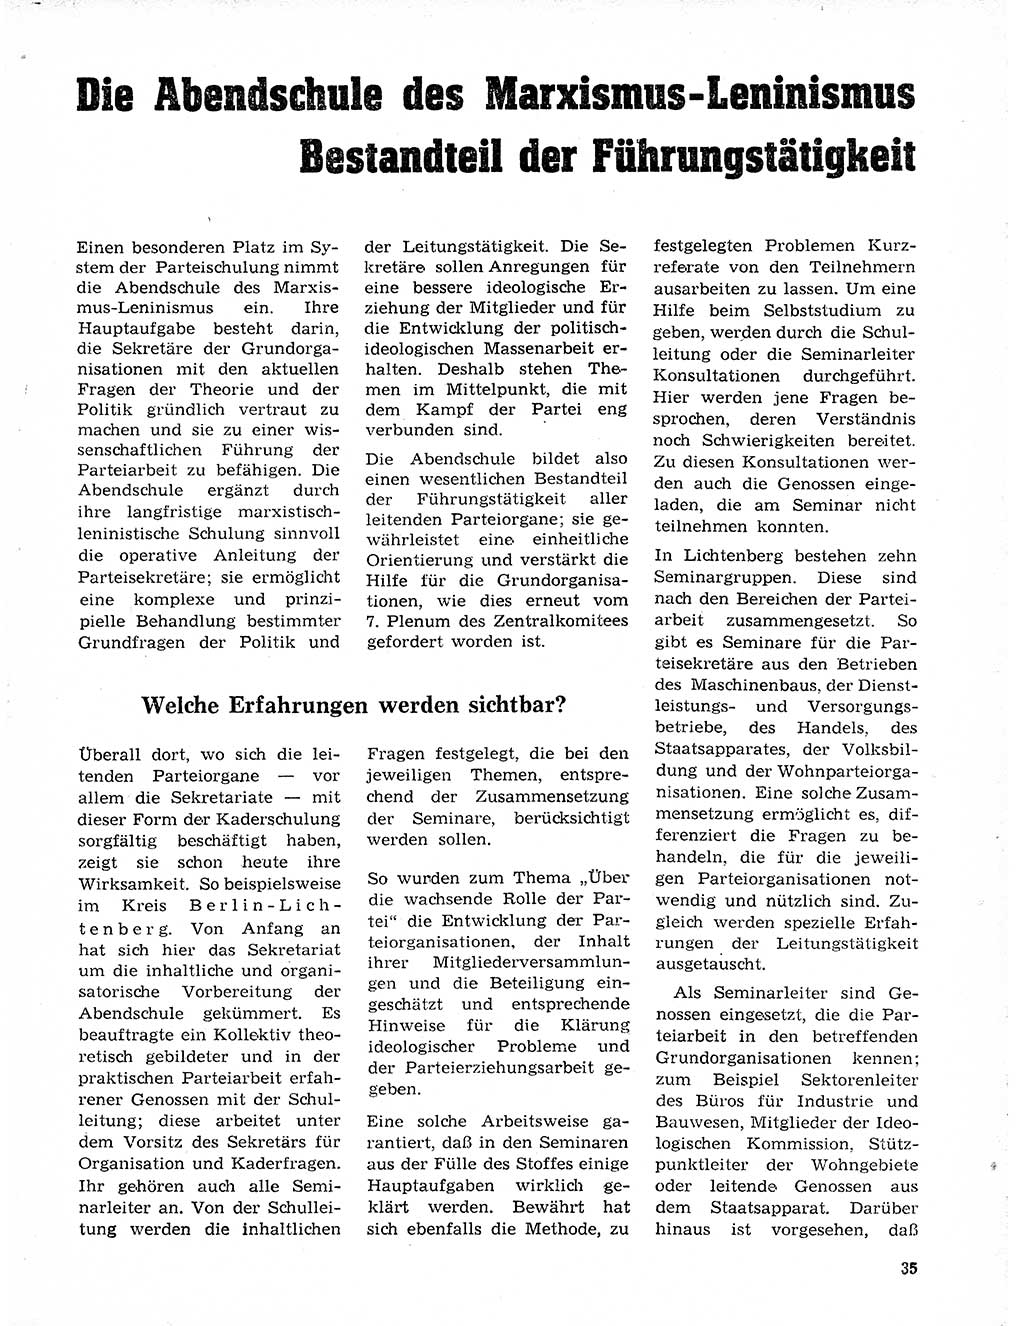 Neuer Weg (NW), Organ des Zentralkomitees (ZK) der SED (Sozialistische Einheitspartei Deutschlands) für Fragen des Parteilebens, 20. Jahrgang [Deutsche Demokratische Republik (DDR)] 1965, Seite 35 (NW ZK SED DDR 1965, S. 35)